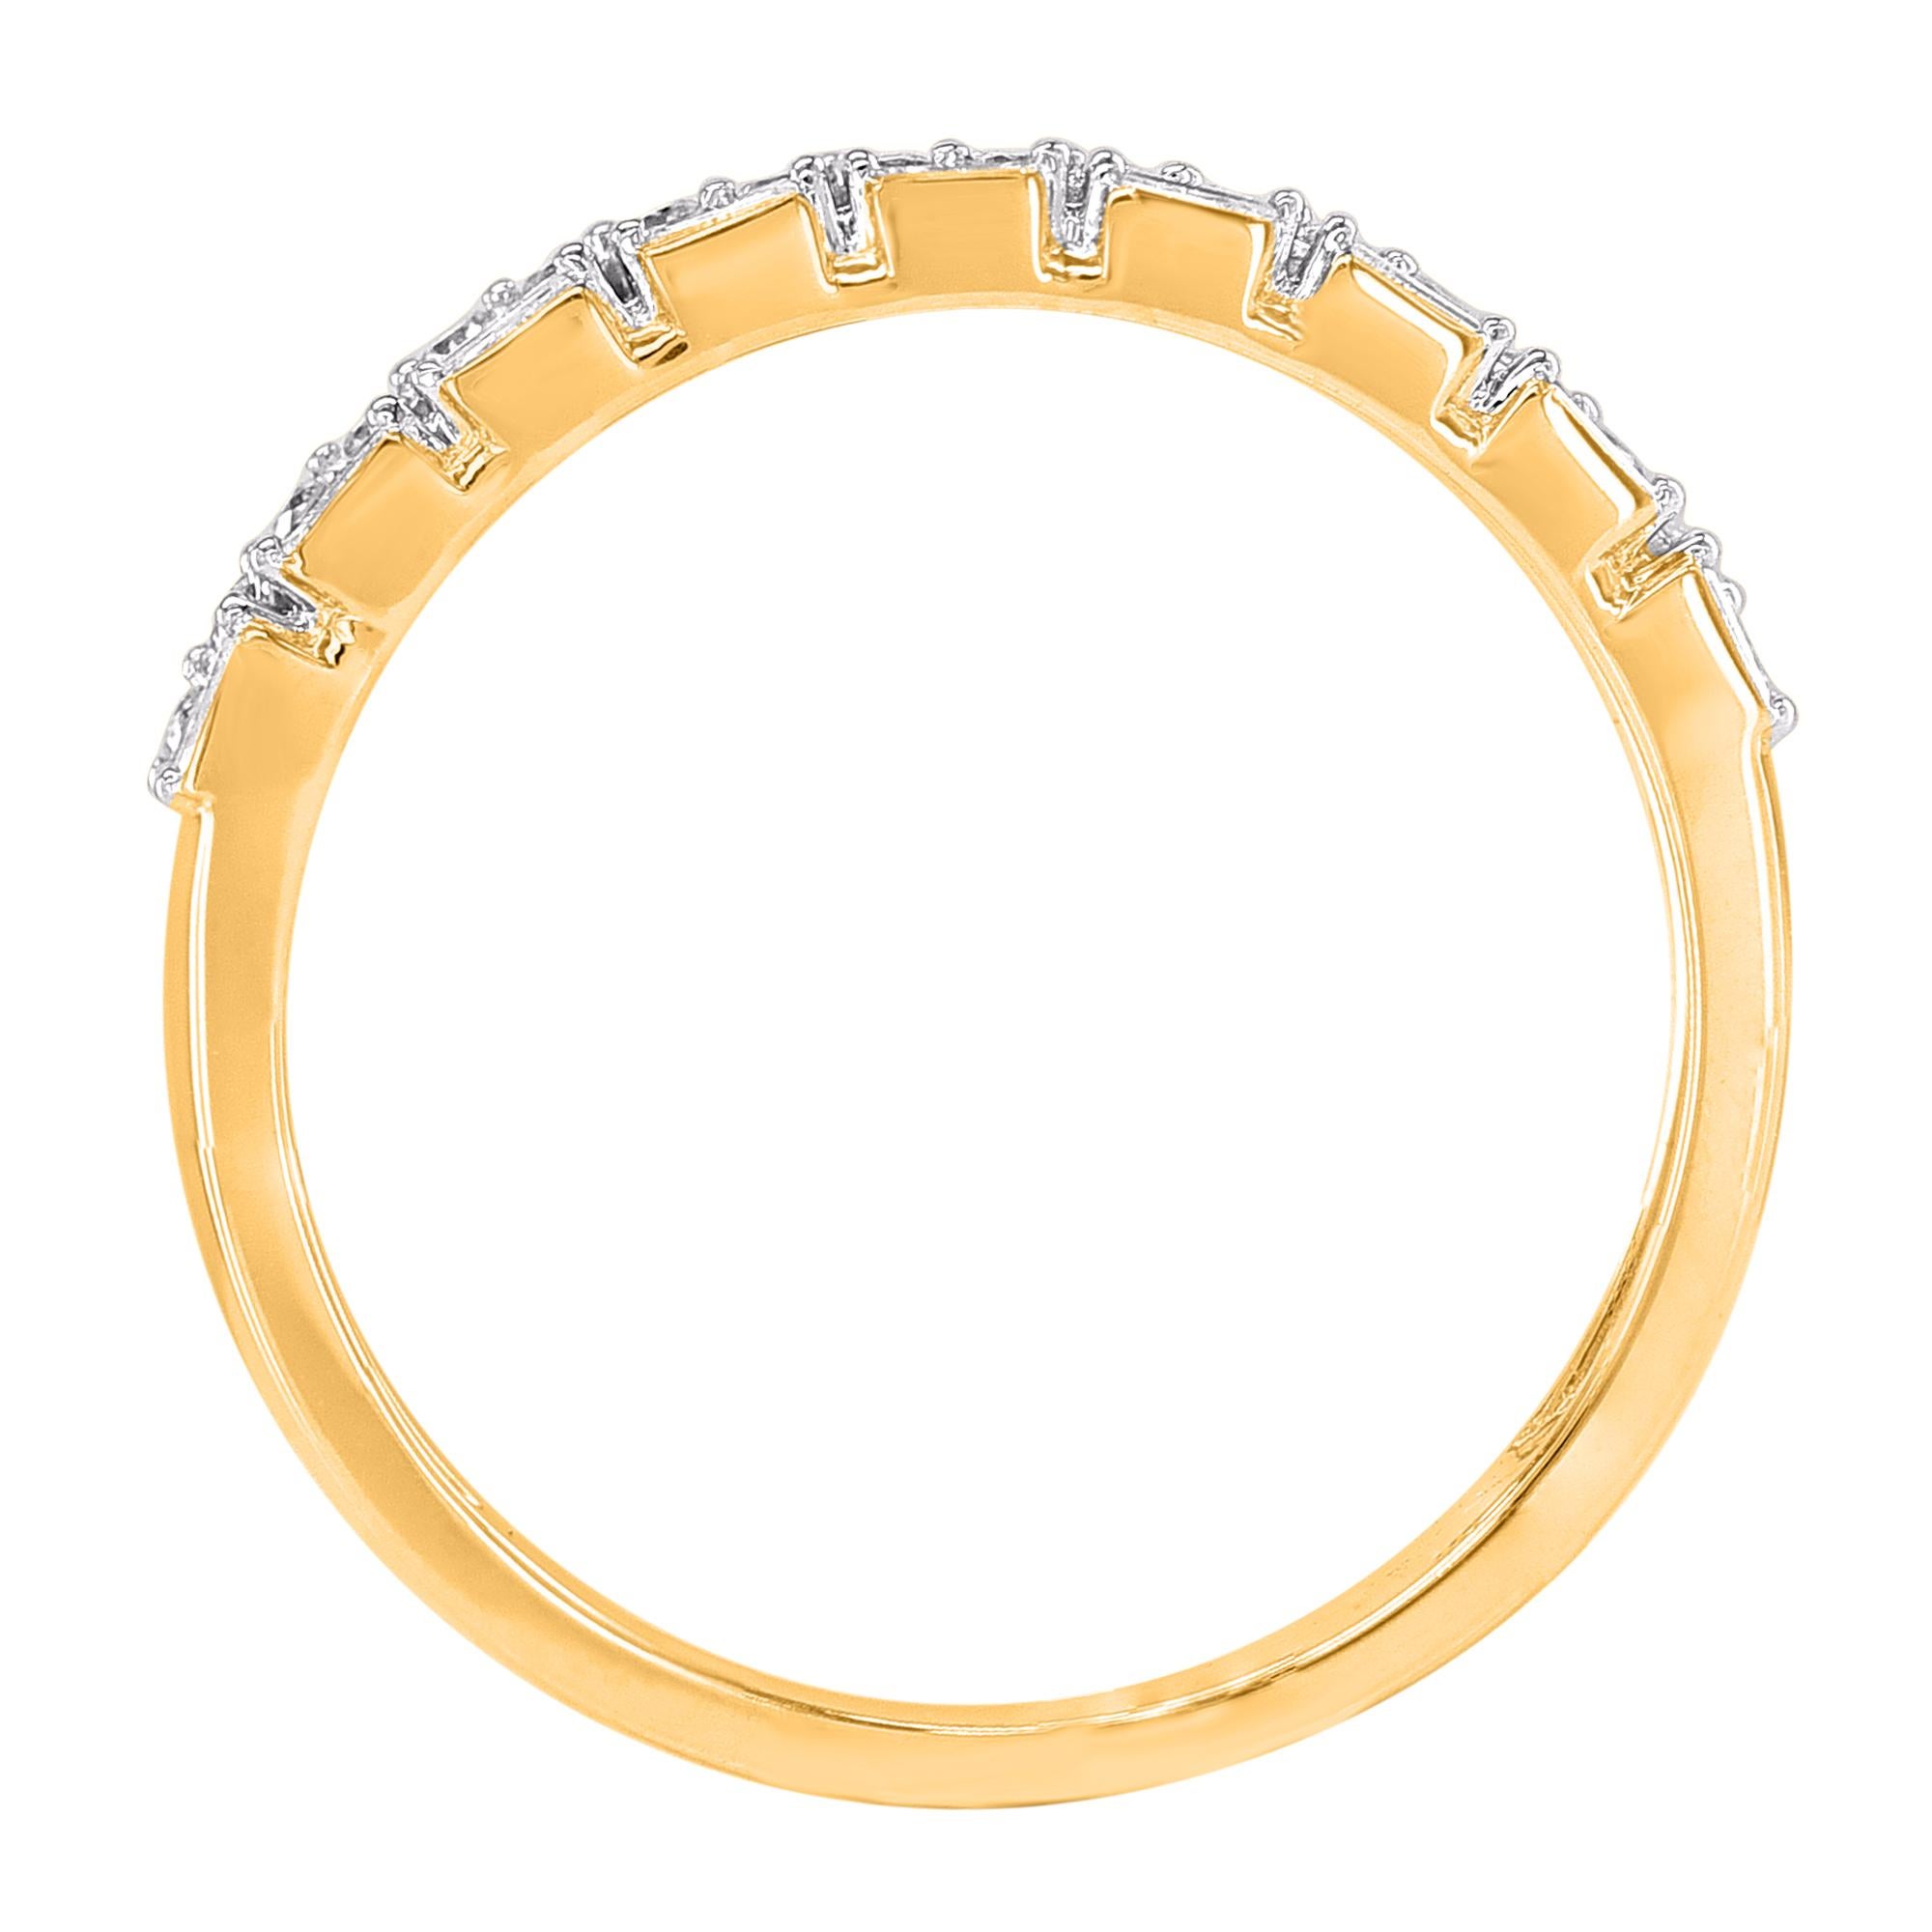 Lassen Sie Ihren schönsten Tag mit diesem Ehering erstrahlen. Von unseren Experten in 14 Karat Gelbgold gefertigt und mit 27 runden Diamanten im Brillantschliff und Baguette-Diamanten in Zackenfassung verziert. Das Gesamtgewicht der Diamanten